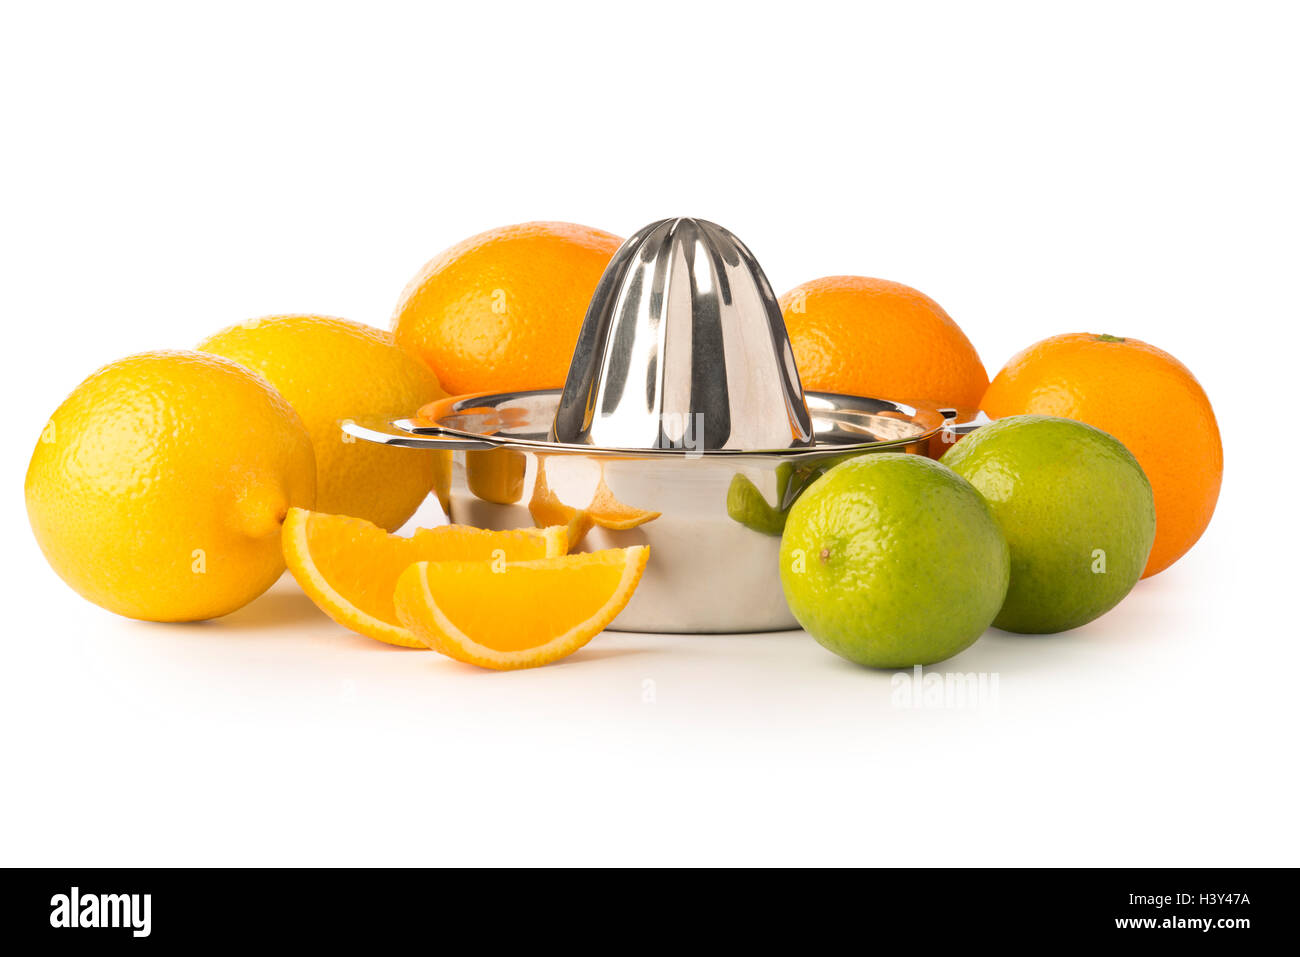 D'une découpe de l'acier inoxydable ou d'orange citrus juicer part entouré d'ensemble de citrons, oranges, citron vert, et une paire de tranches d'orange. Banque D'Images